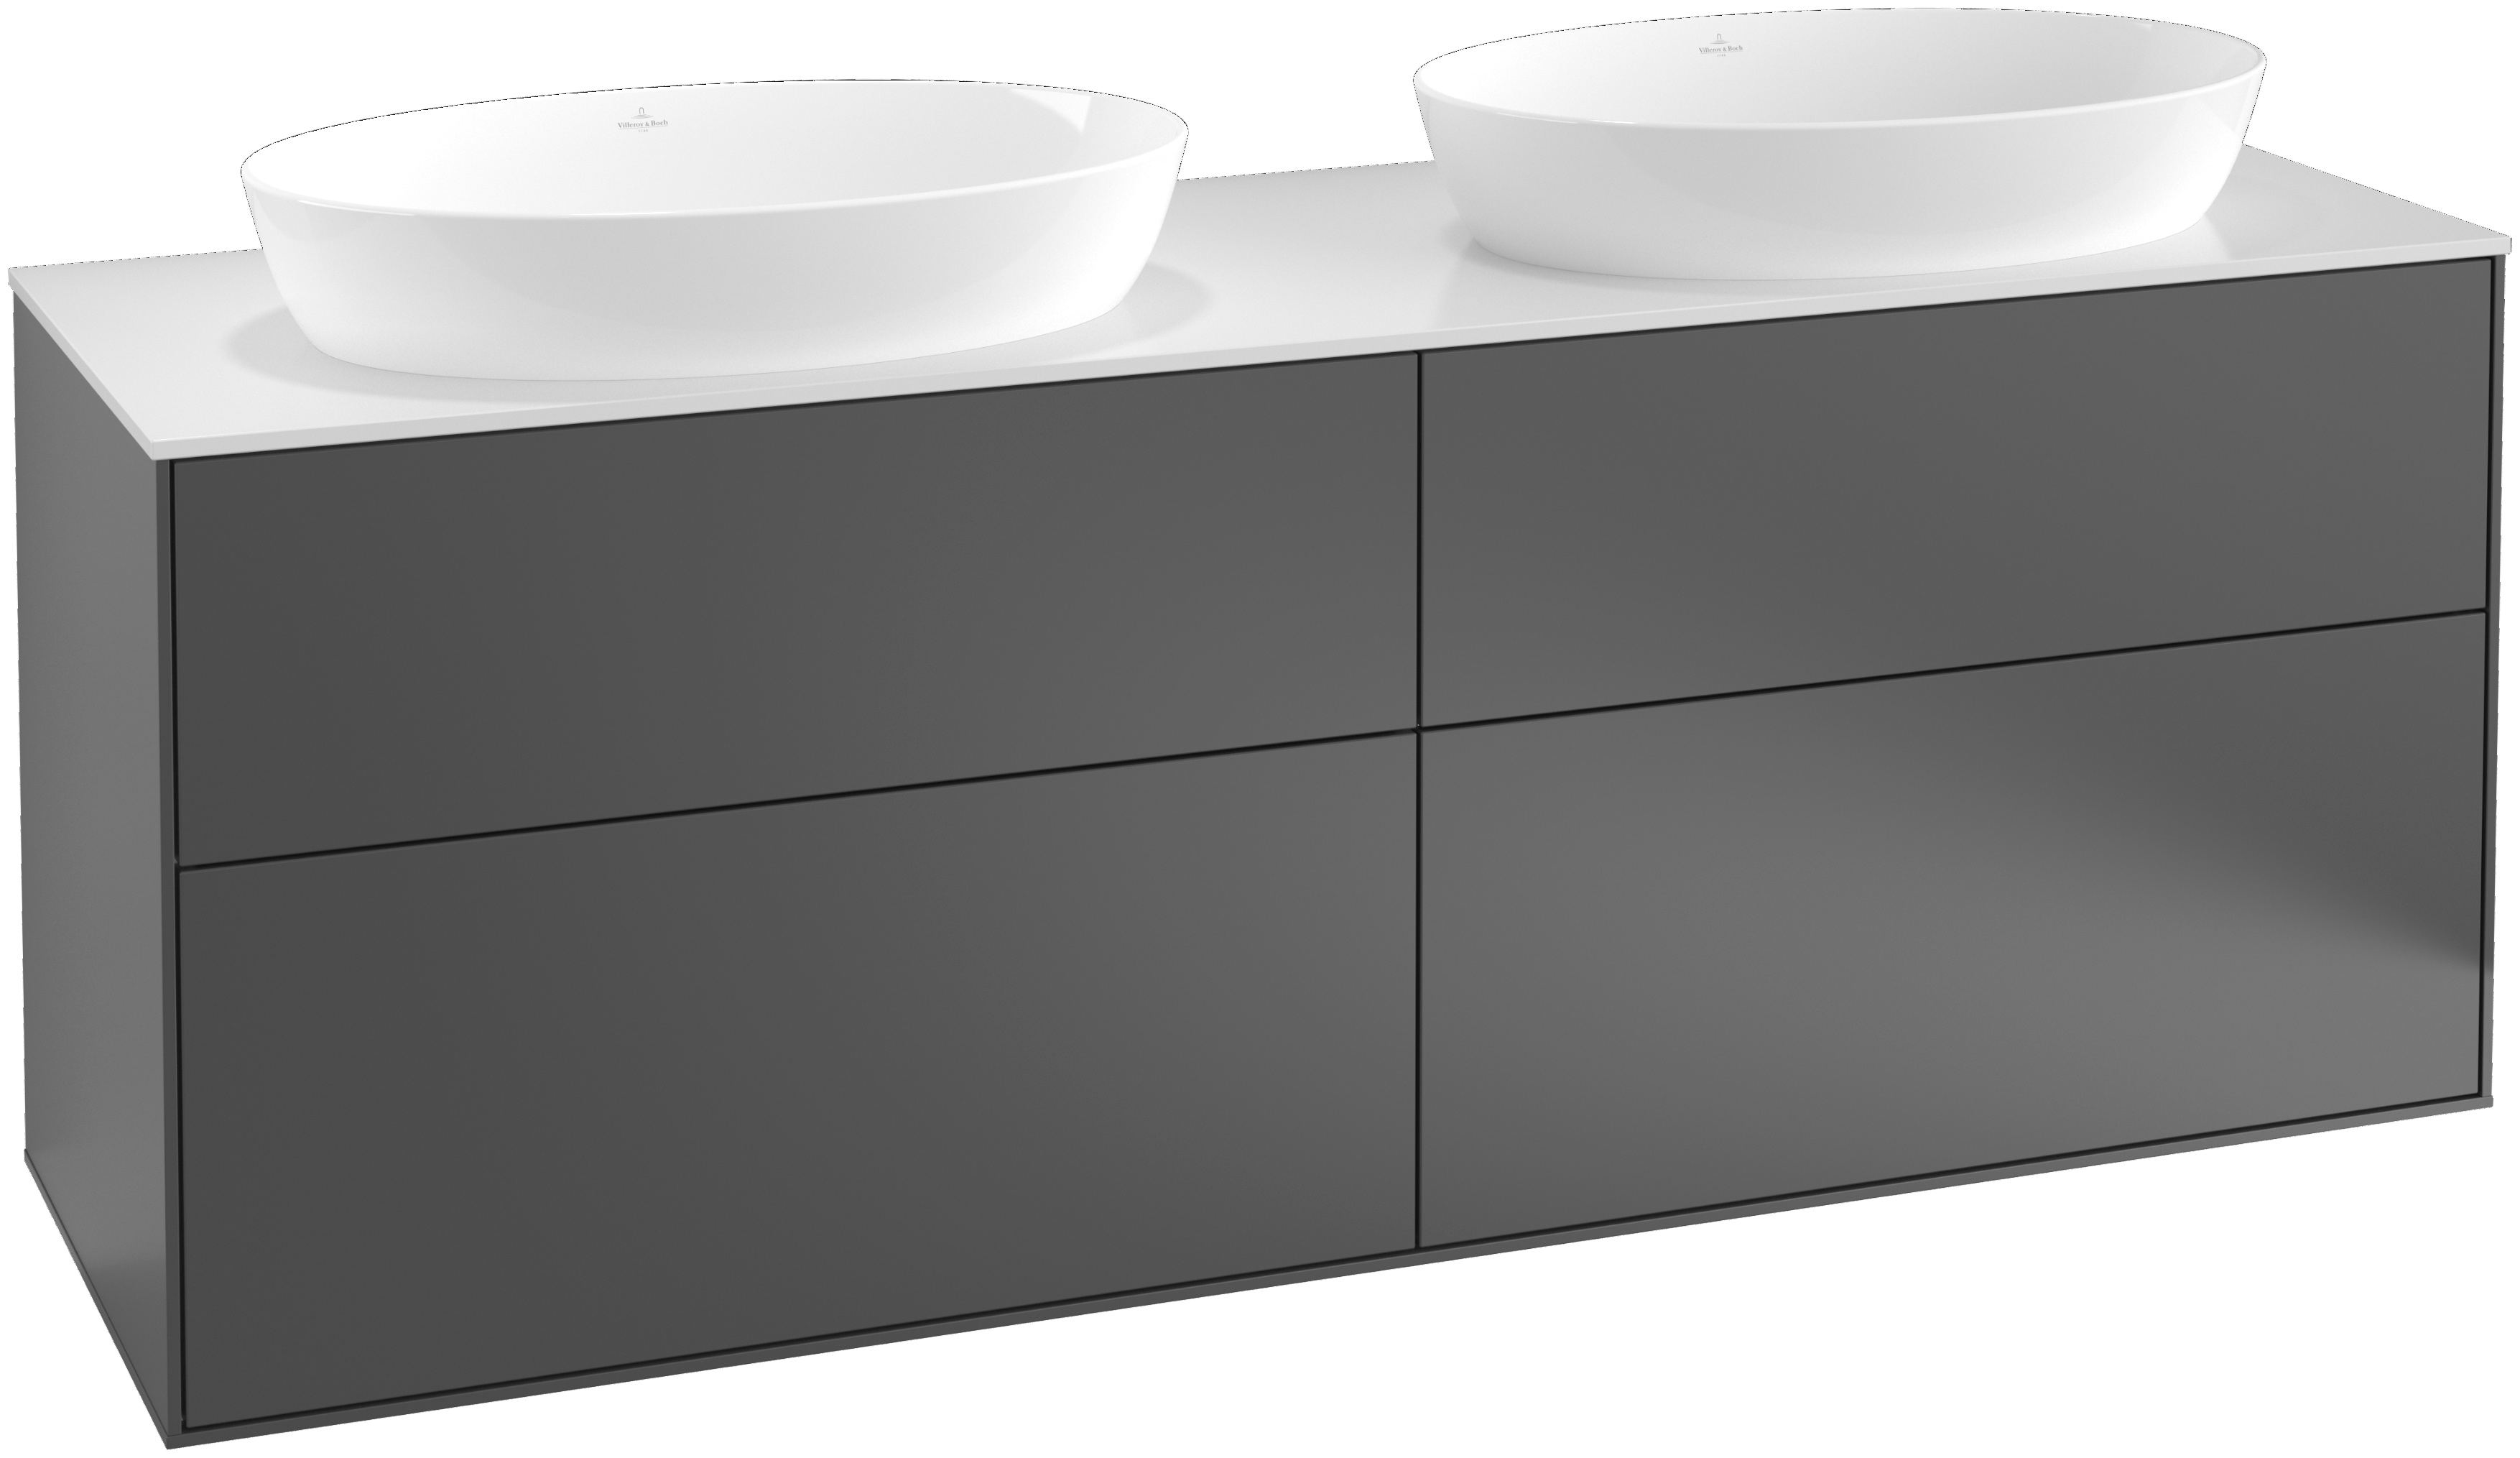 Villeroy & Boch Waschtischunterschrank „Finion“ für Schrankwaschtisch 160 × 60,3 × 50,1 cm 4 Schubladen, für 2 Waschbecken in links und rechts